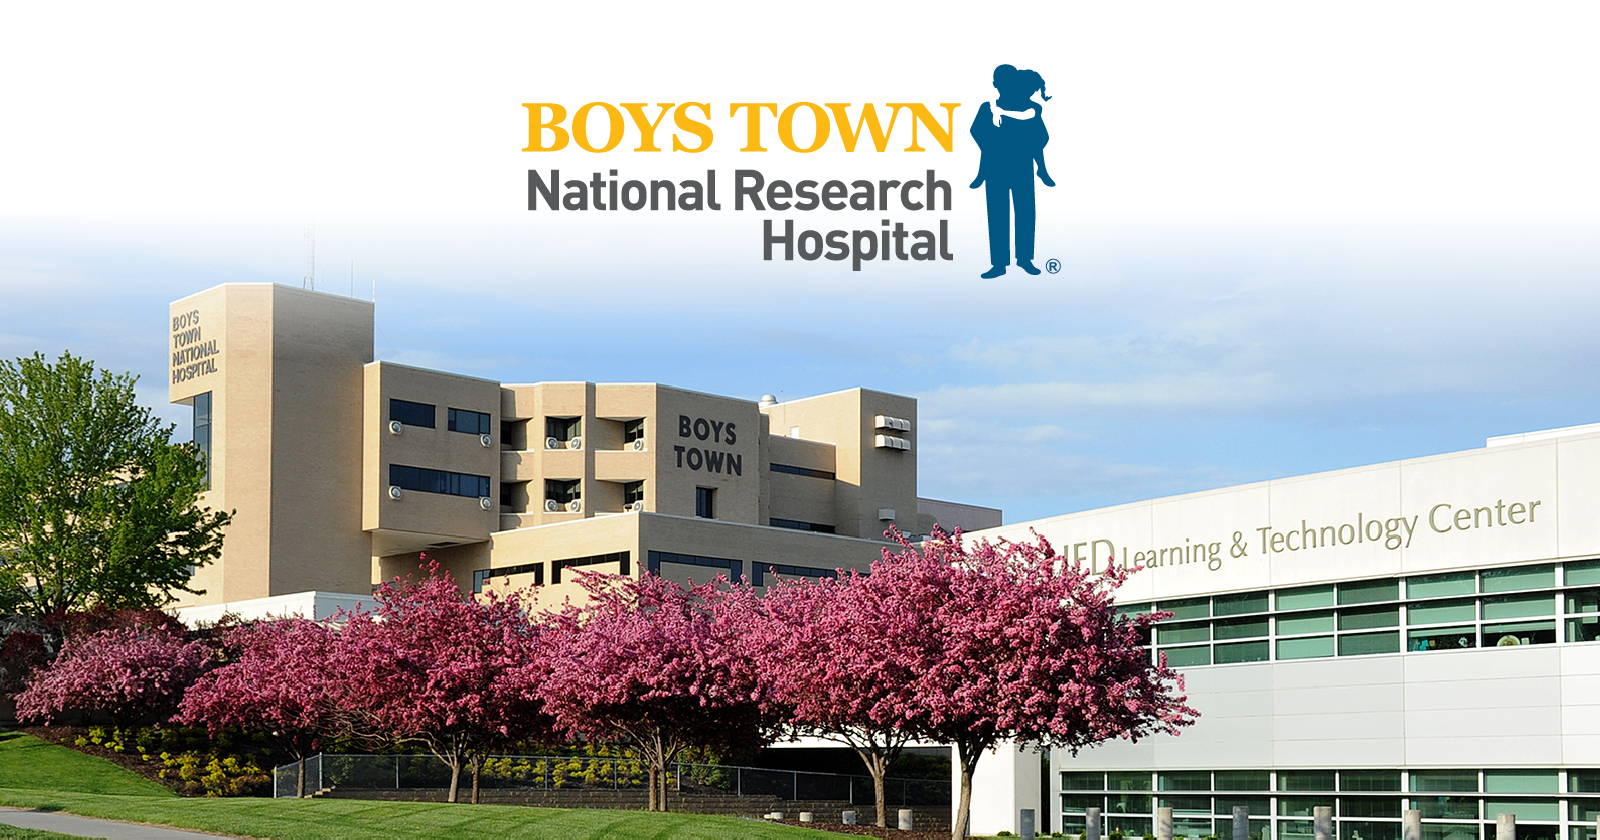 (c) Boystownhospital.org